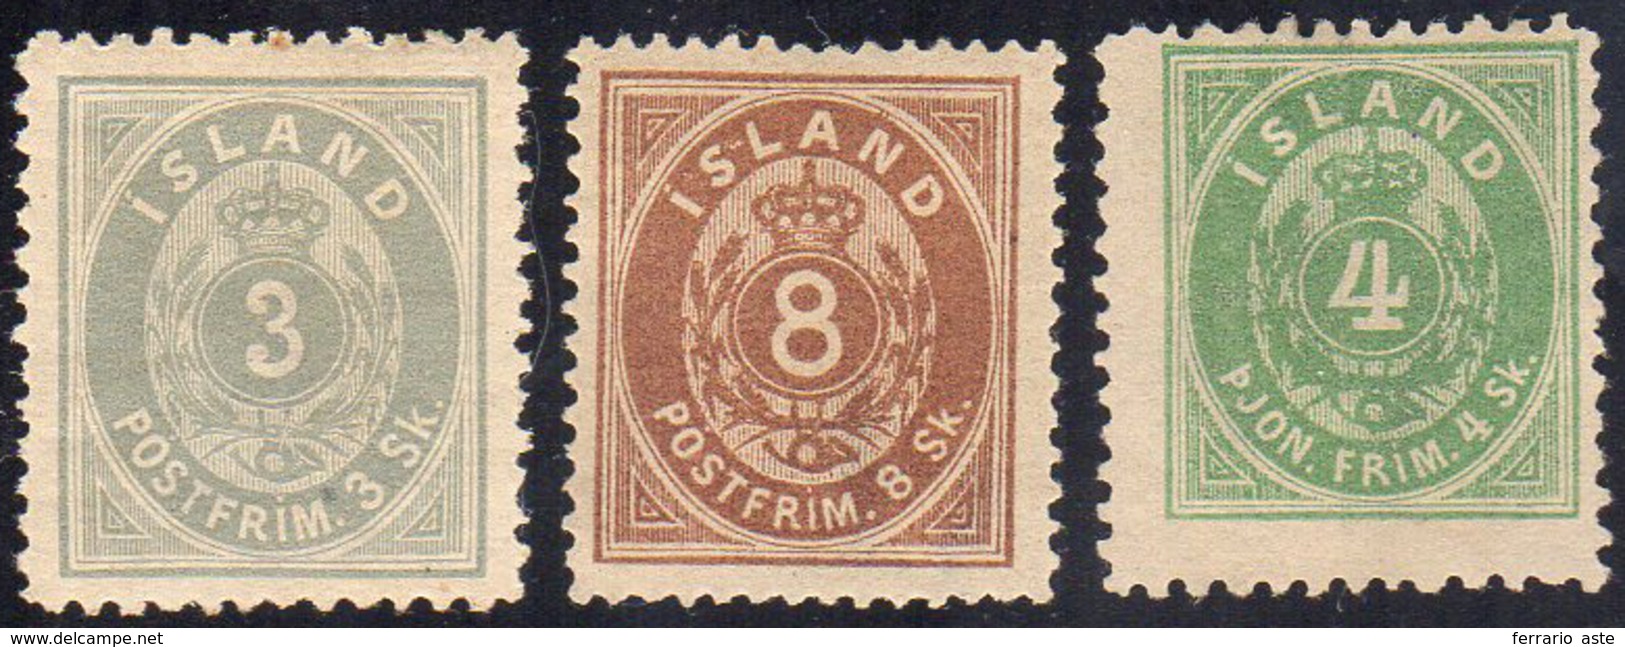 ISLANDA 1873 - 3 S. Grigio, 8 S. Bruno, 4 S. Verde Servizio (2,4,S.1A), Nuovi, Gomma Originale, Perf... - Sonstige - Europa